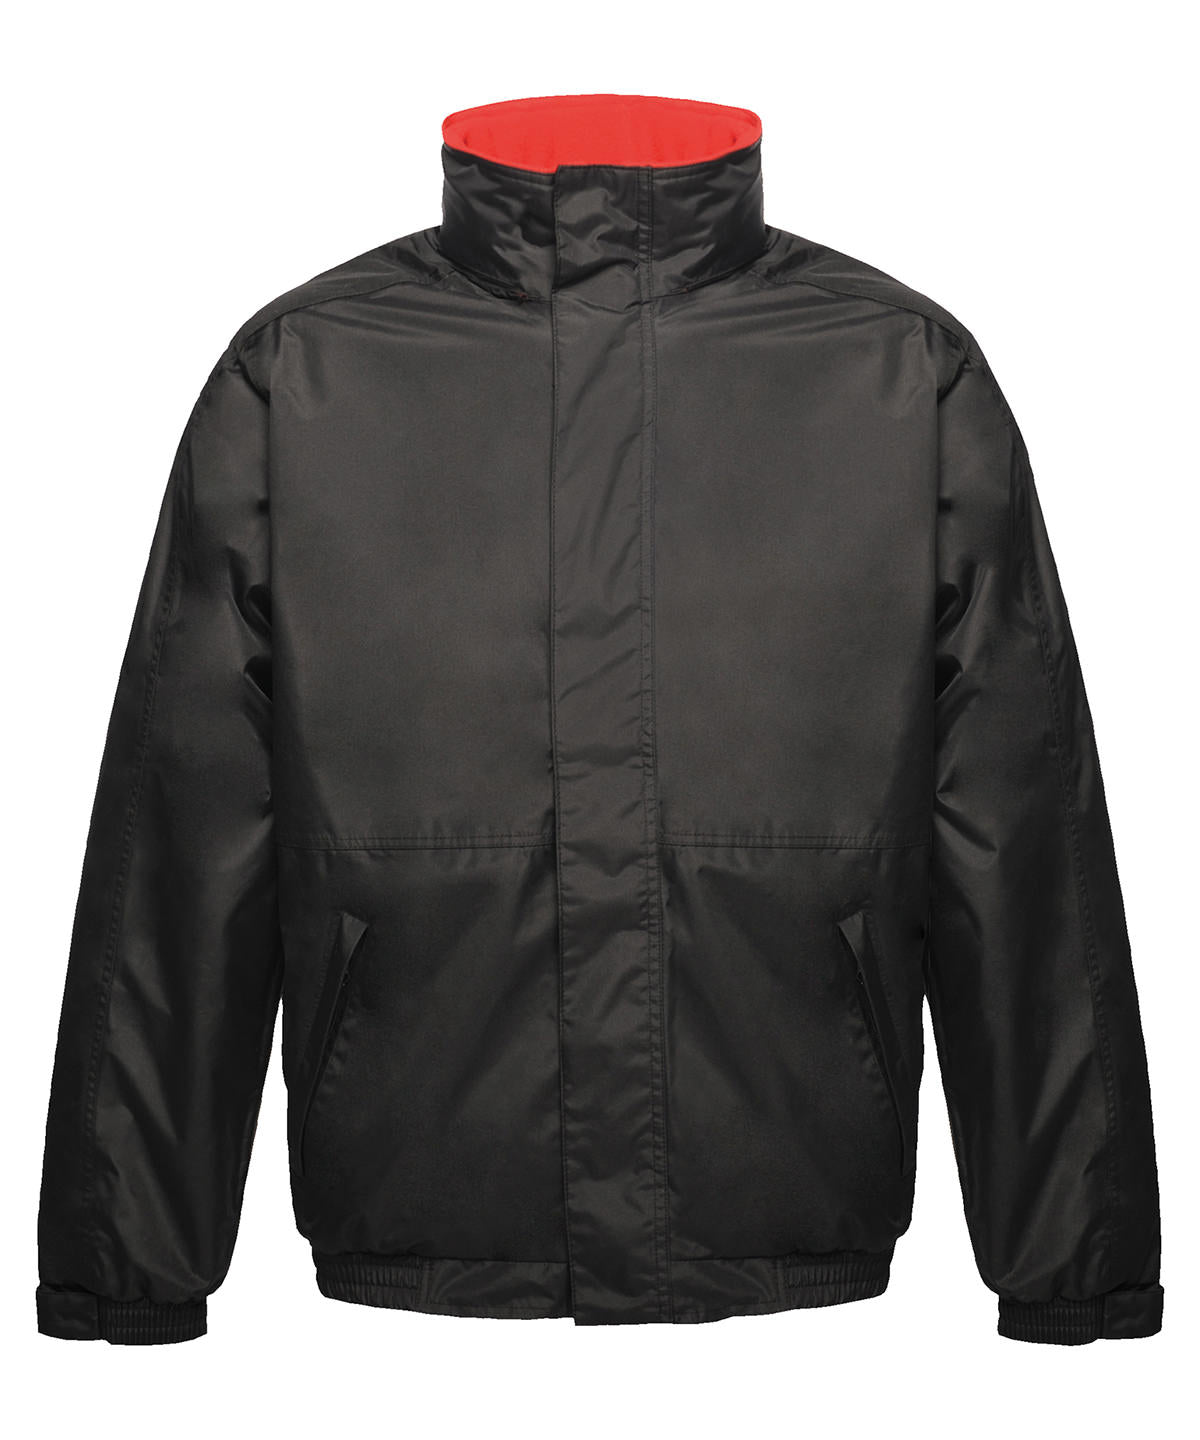 Regatta Dover jacket Black/Red